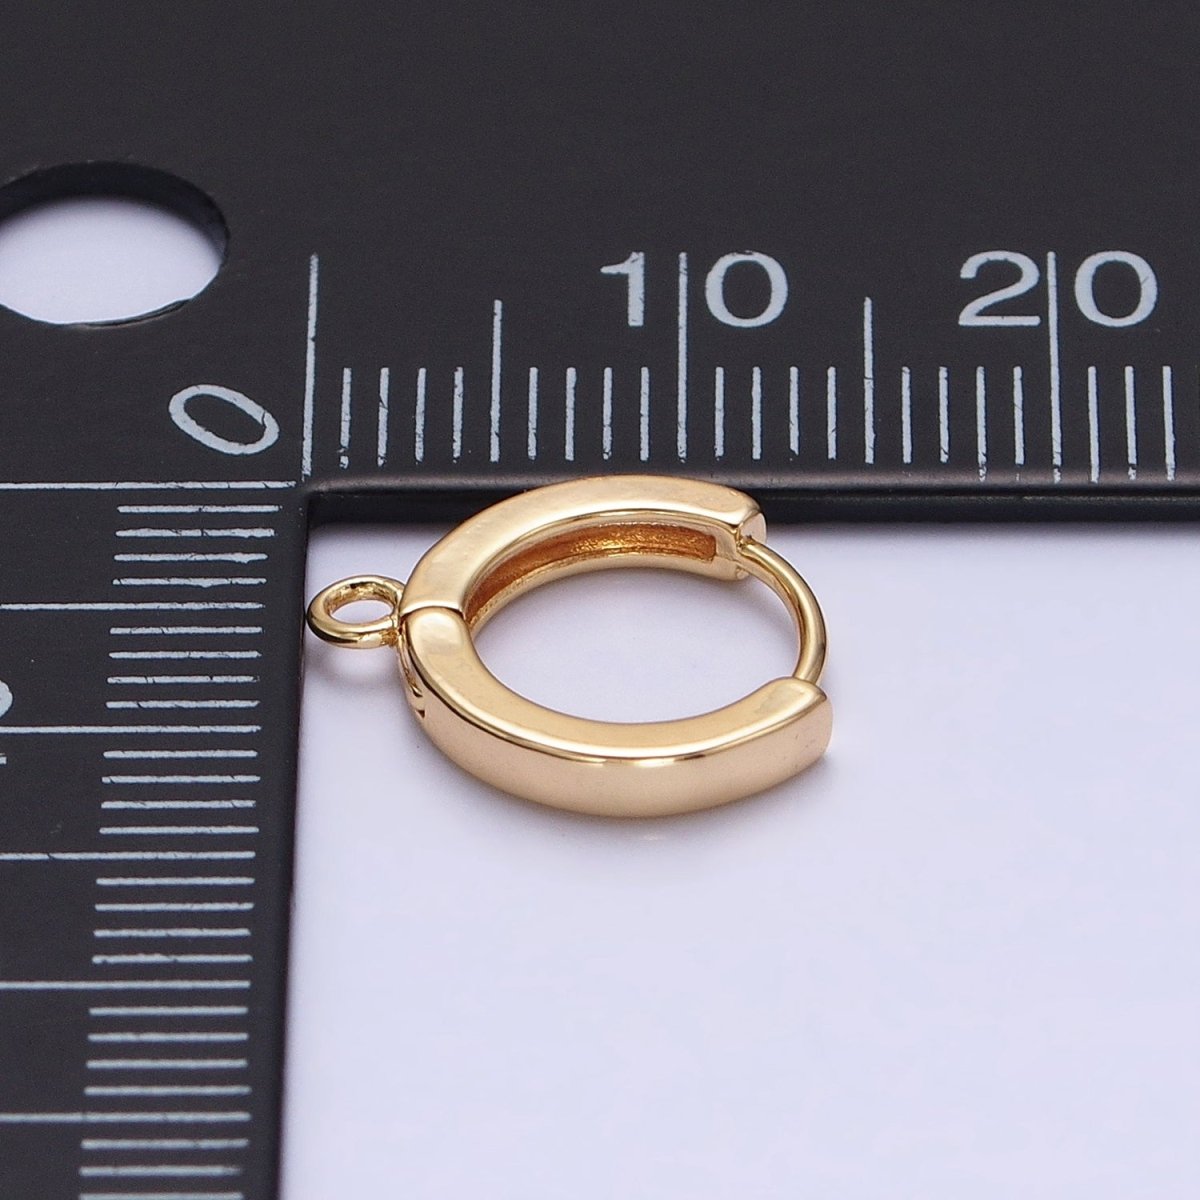 12mm Round Huggie Open Loop Earrings Supply in Gold & Silver | Z-288 Z-289 - DLUXCA